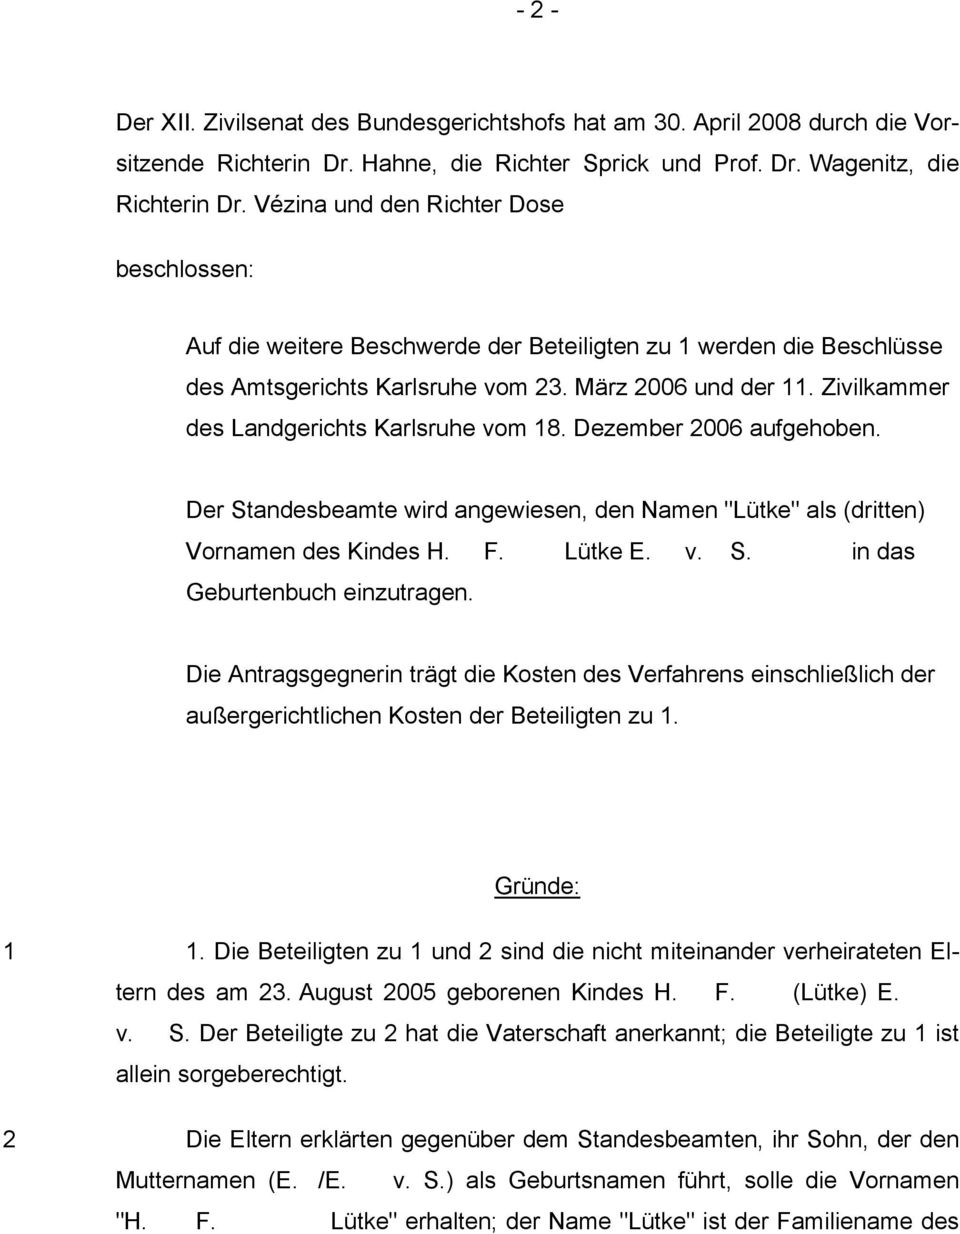 Zivilkammer des Landgerichts Karlsruhe vom 18. Dezember 2006 aufgehoben. Der Standesbeamte wird angewiesen, den Namen "Lütke" als (dritten) Vornamen des Kindes H. F. Lütke E. v. S. in das Geburtenbuch einzutragen.